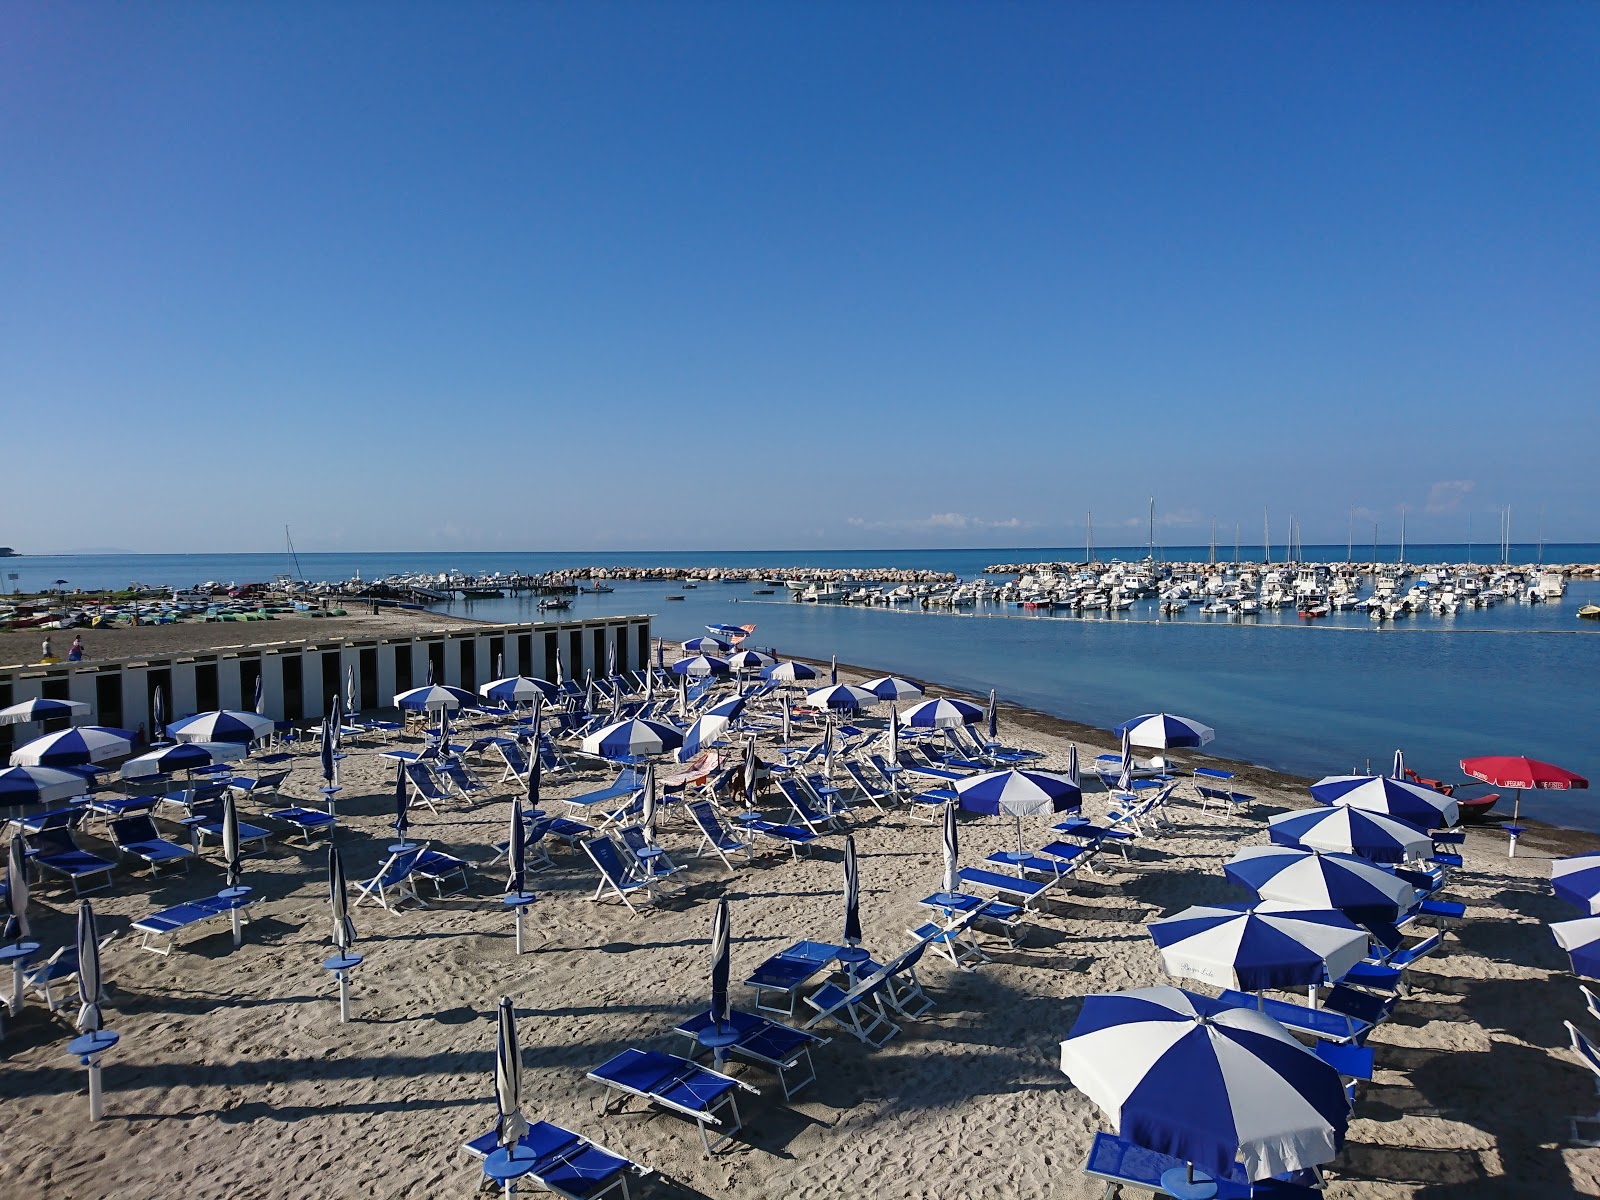 Spiaggia Di Domani'in fotoğrafı küçük koylar ile birlikte